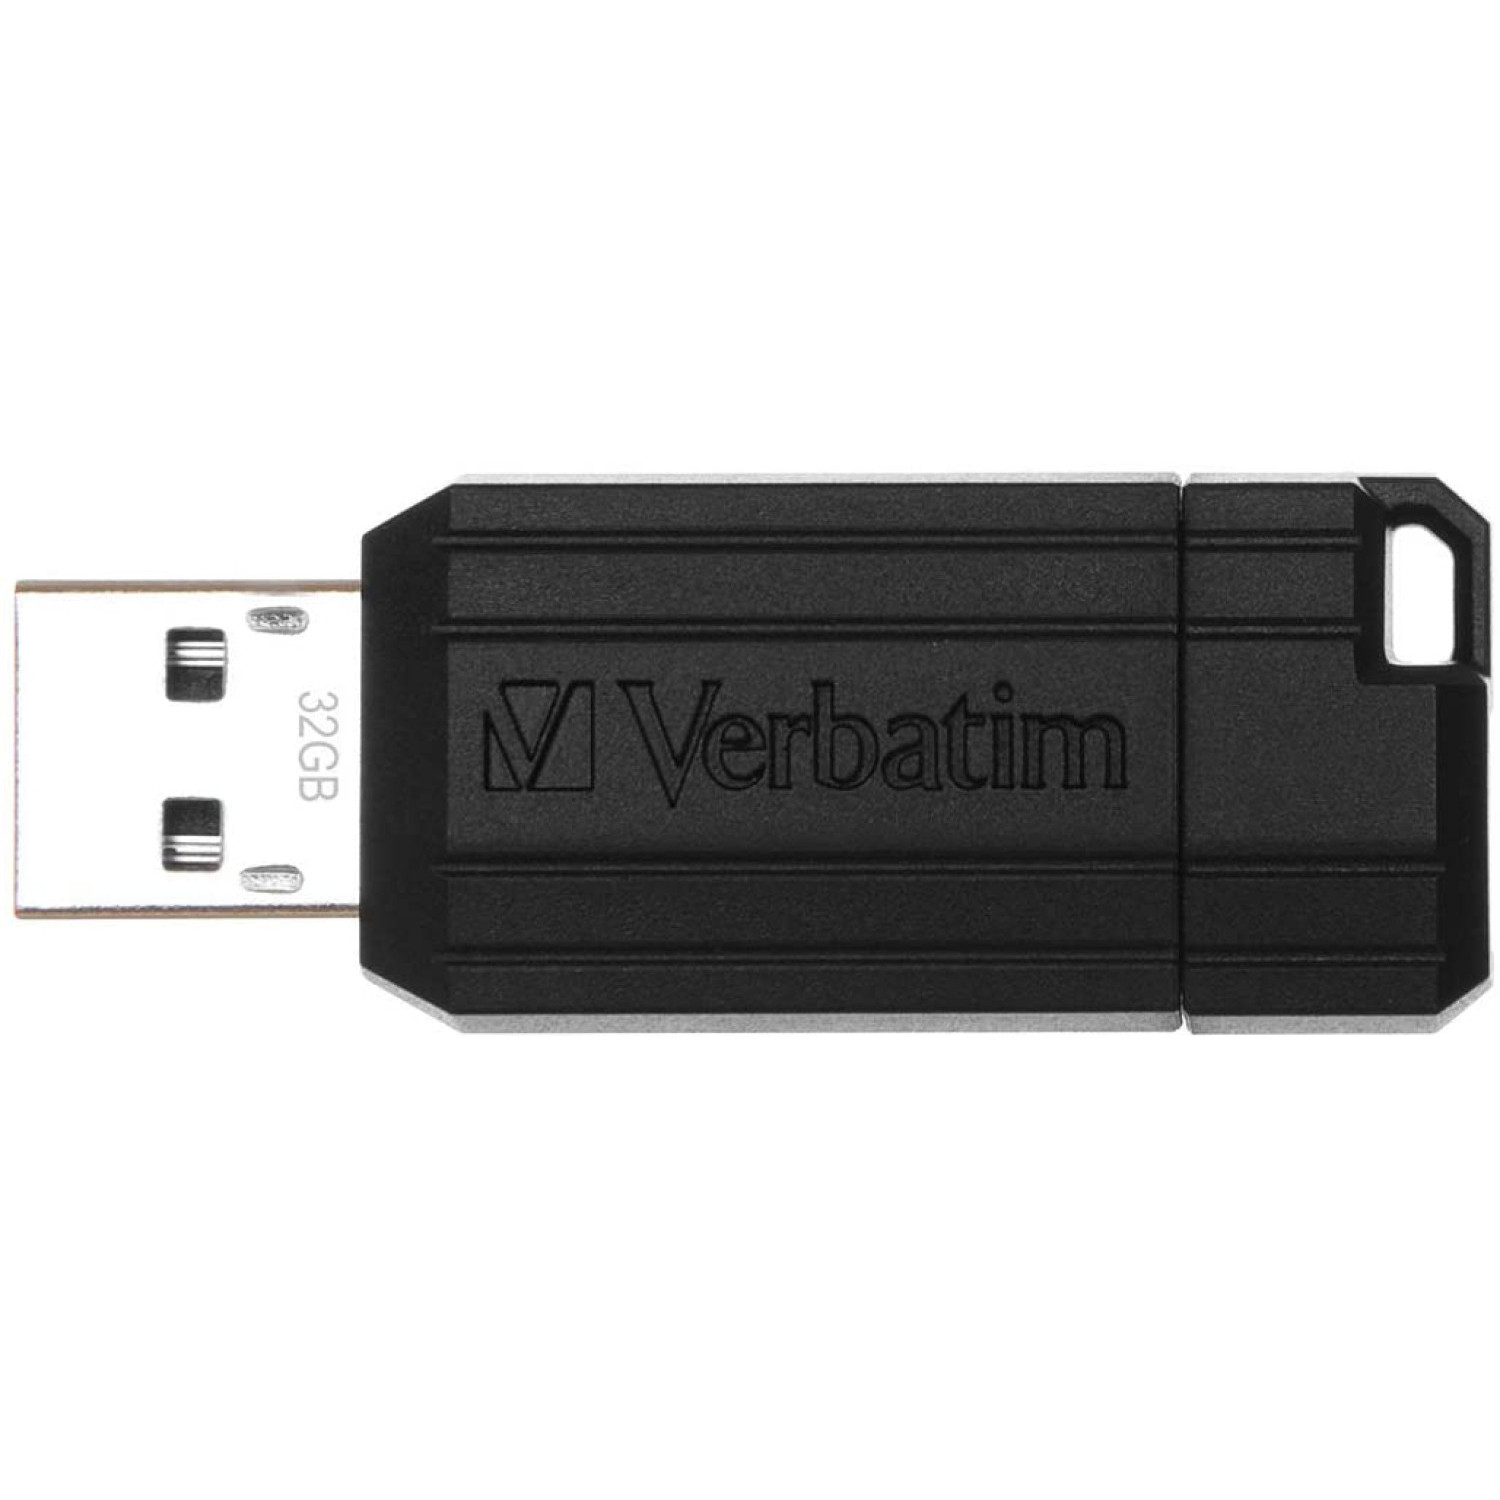 Флаш памет Verbatim Nera 32 GB, черна